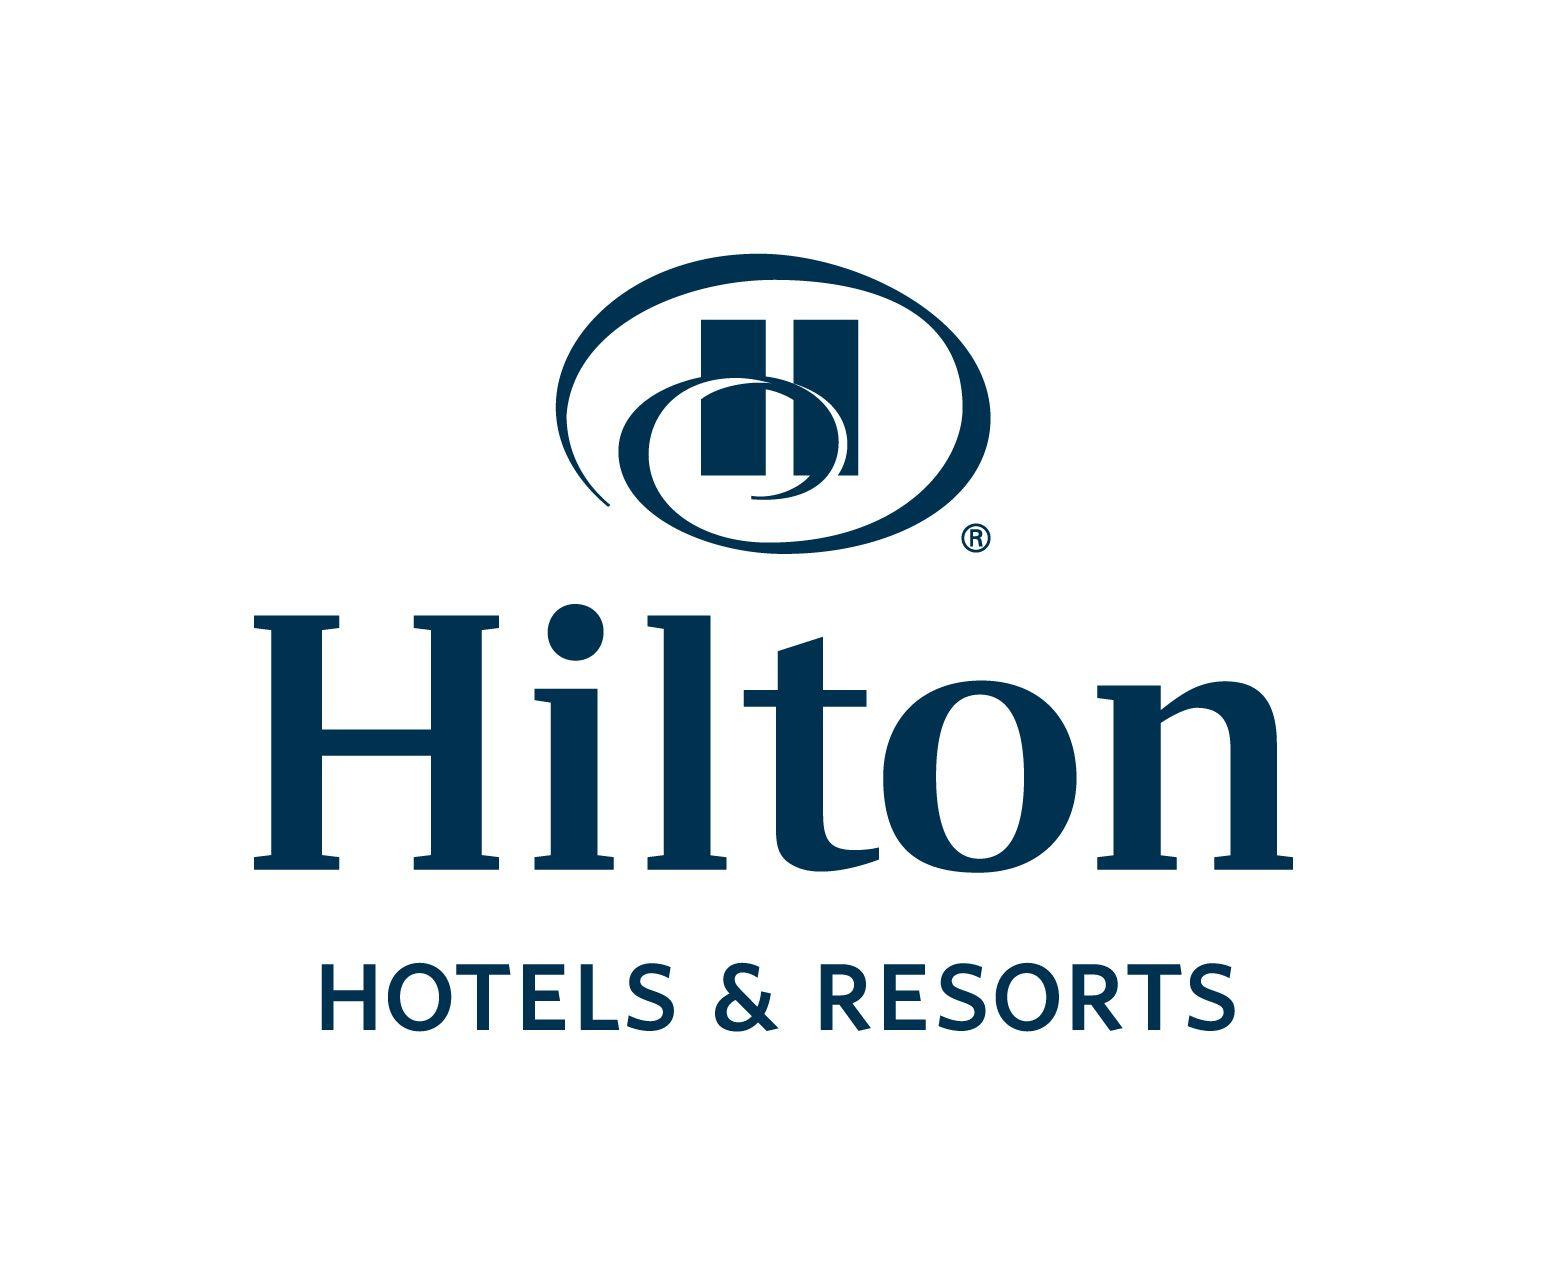 Hotels and Resorts Logo - Hotels and resorts Logos